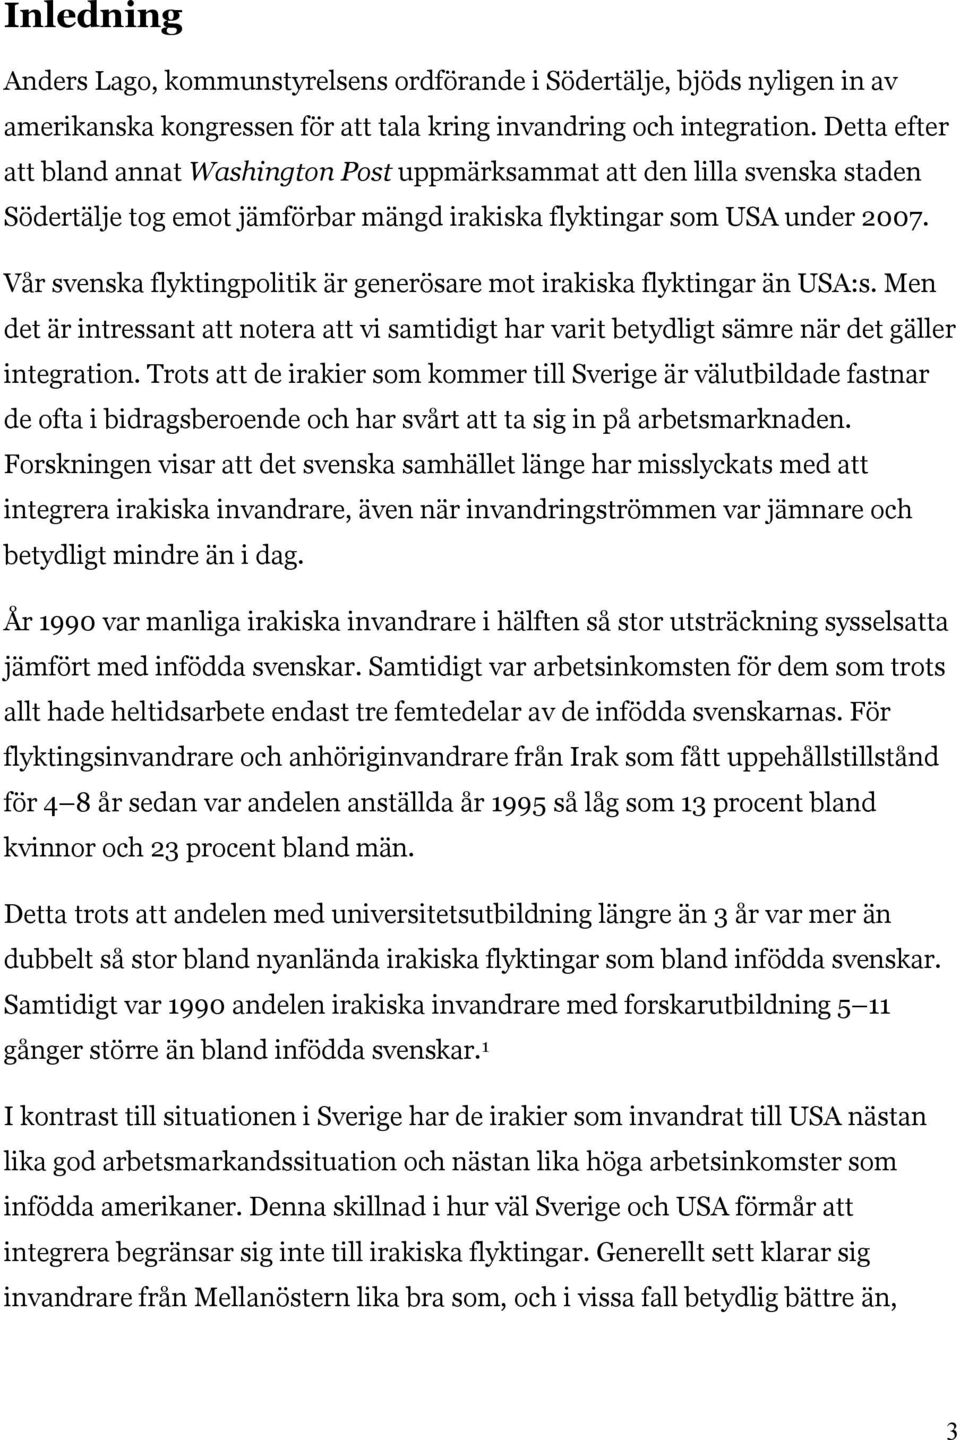 Vår svenska flyktingpolitik är generösare mot irakiska flyktingar än USA:s. Men det är intressant att notera att vi samtidigt har varit betydligt sämre när det gäller integration.